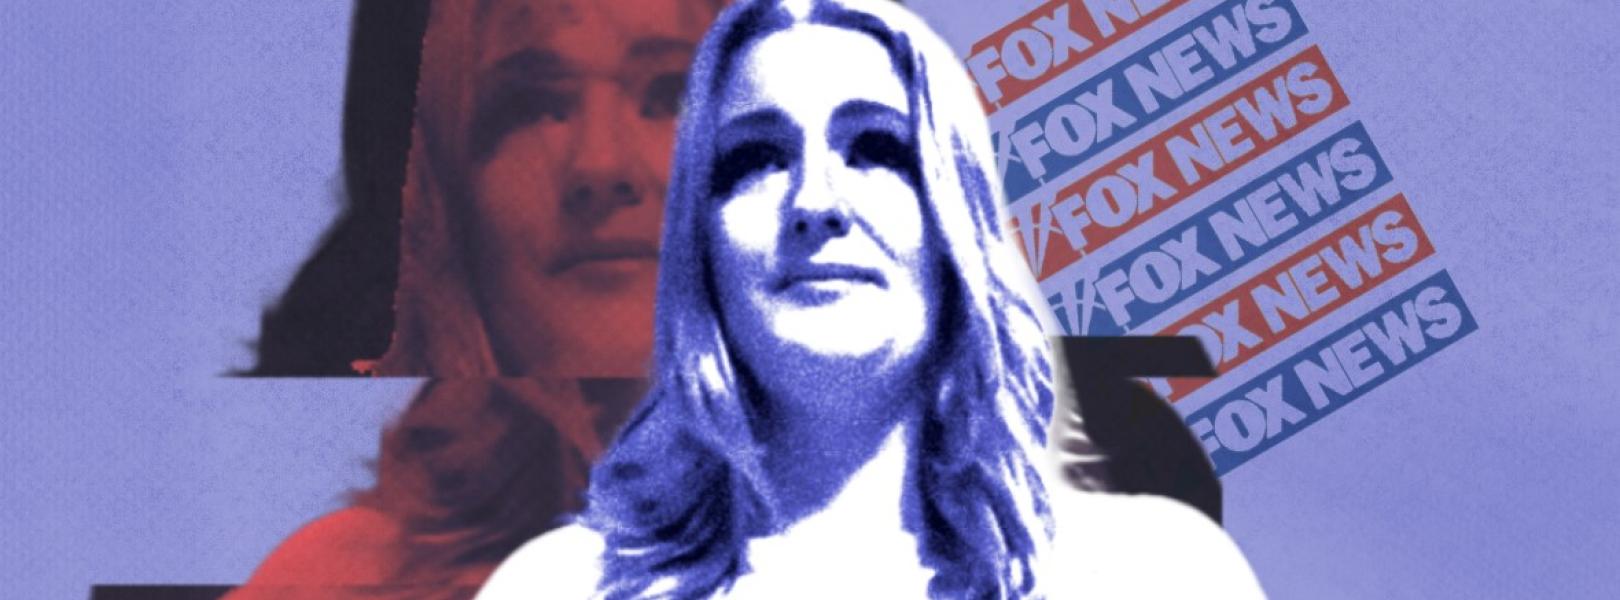 Jenna Ellis with a Fox News logo